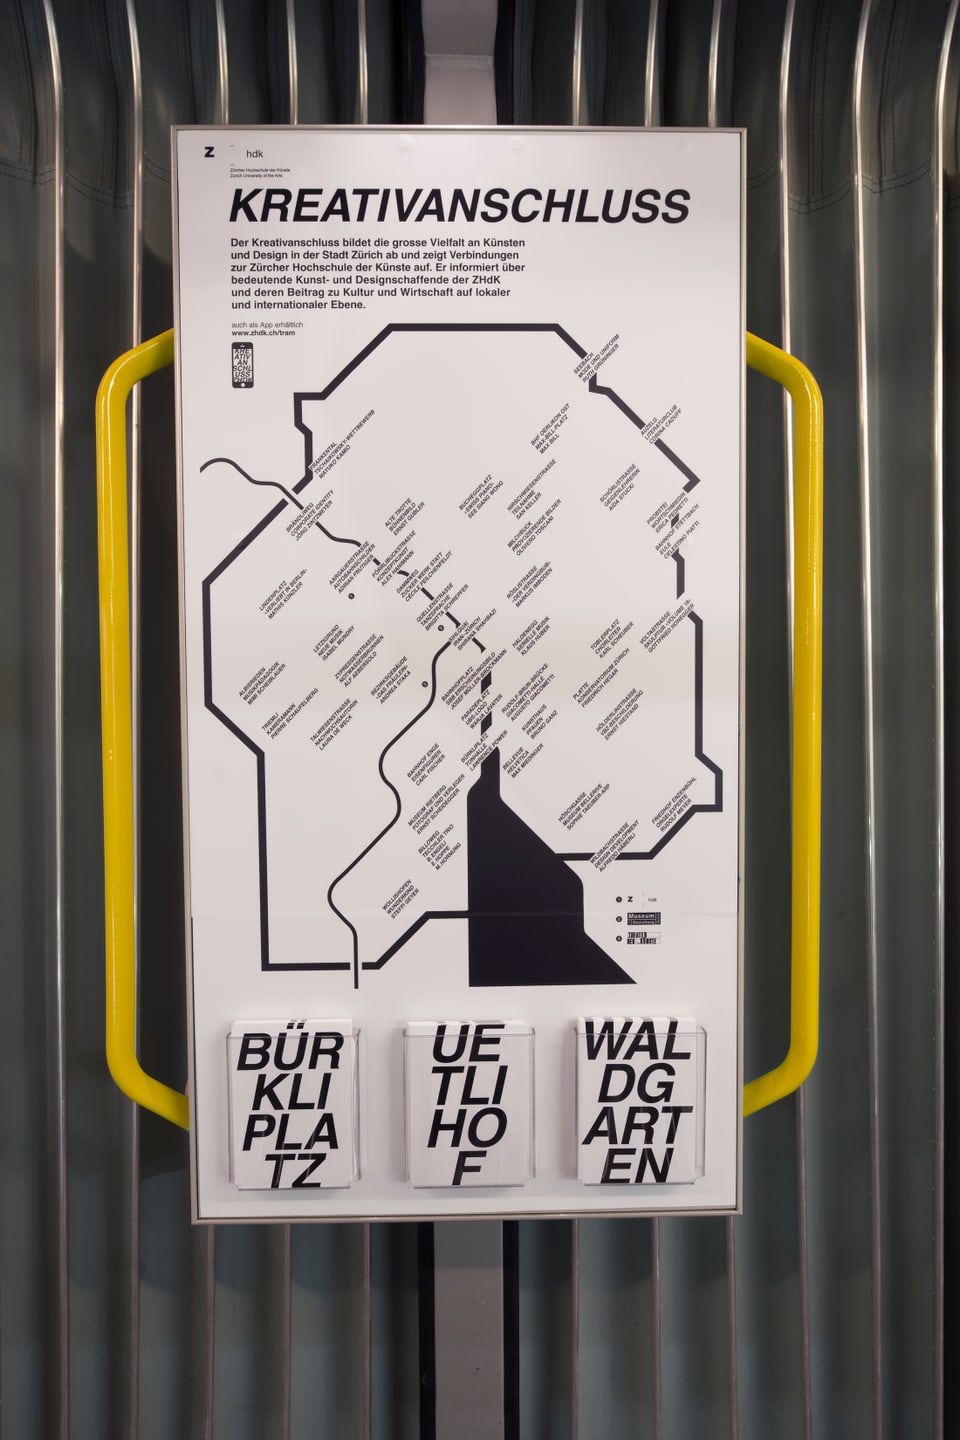 Ein Plakat im Tram, darauf eine Karte von Zürich und der Titel "Kreativanschluss"